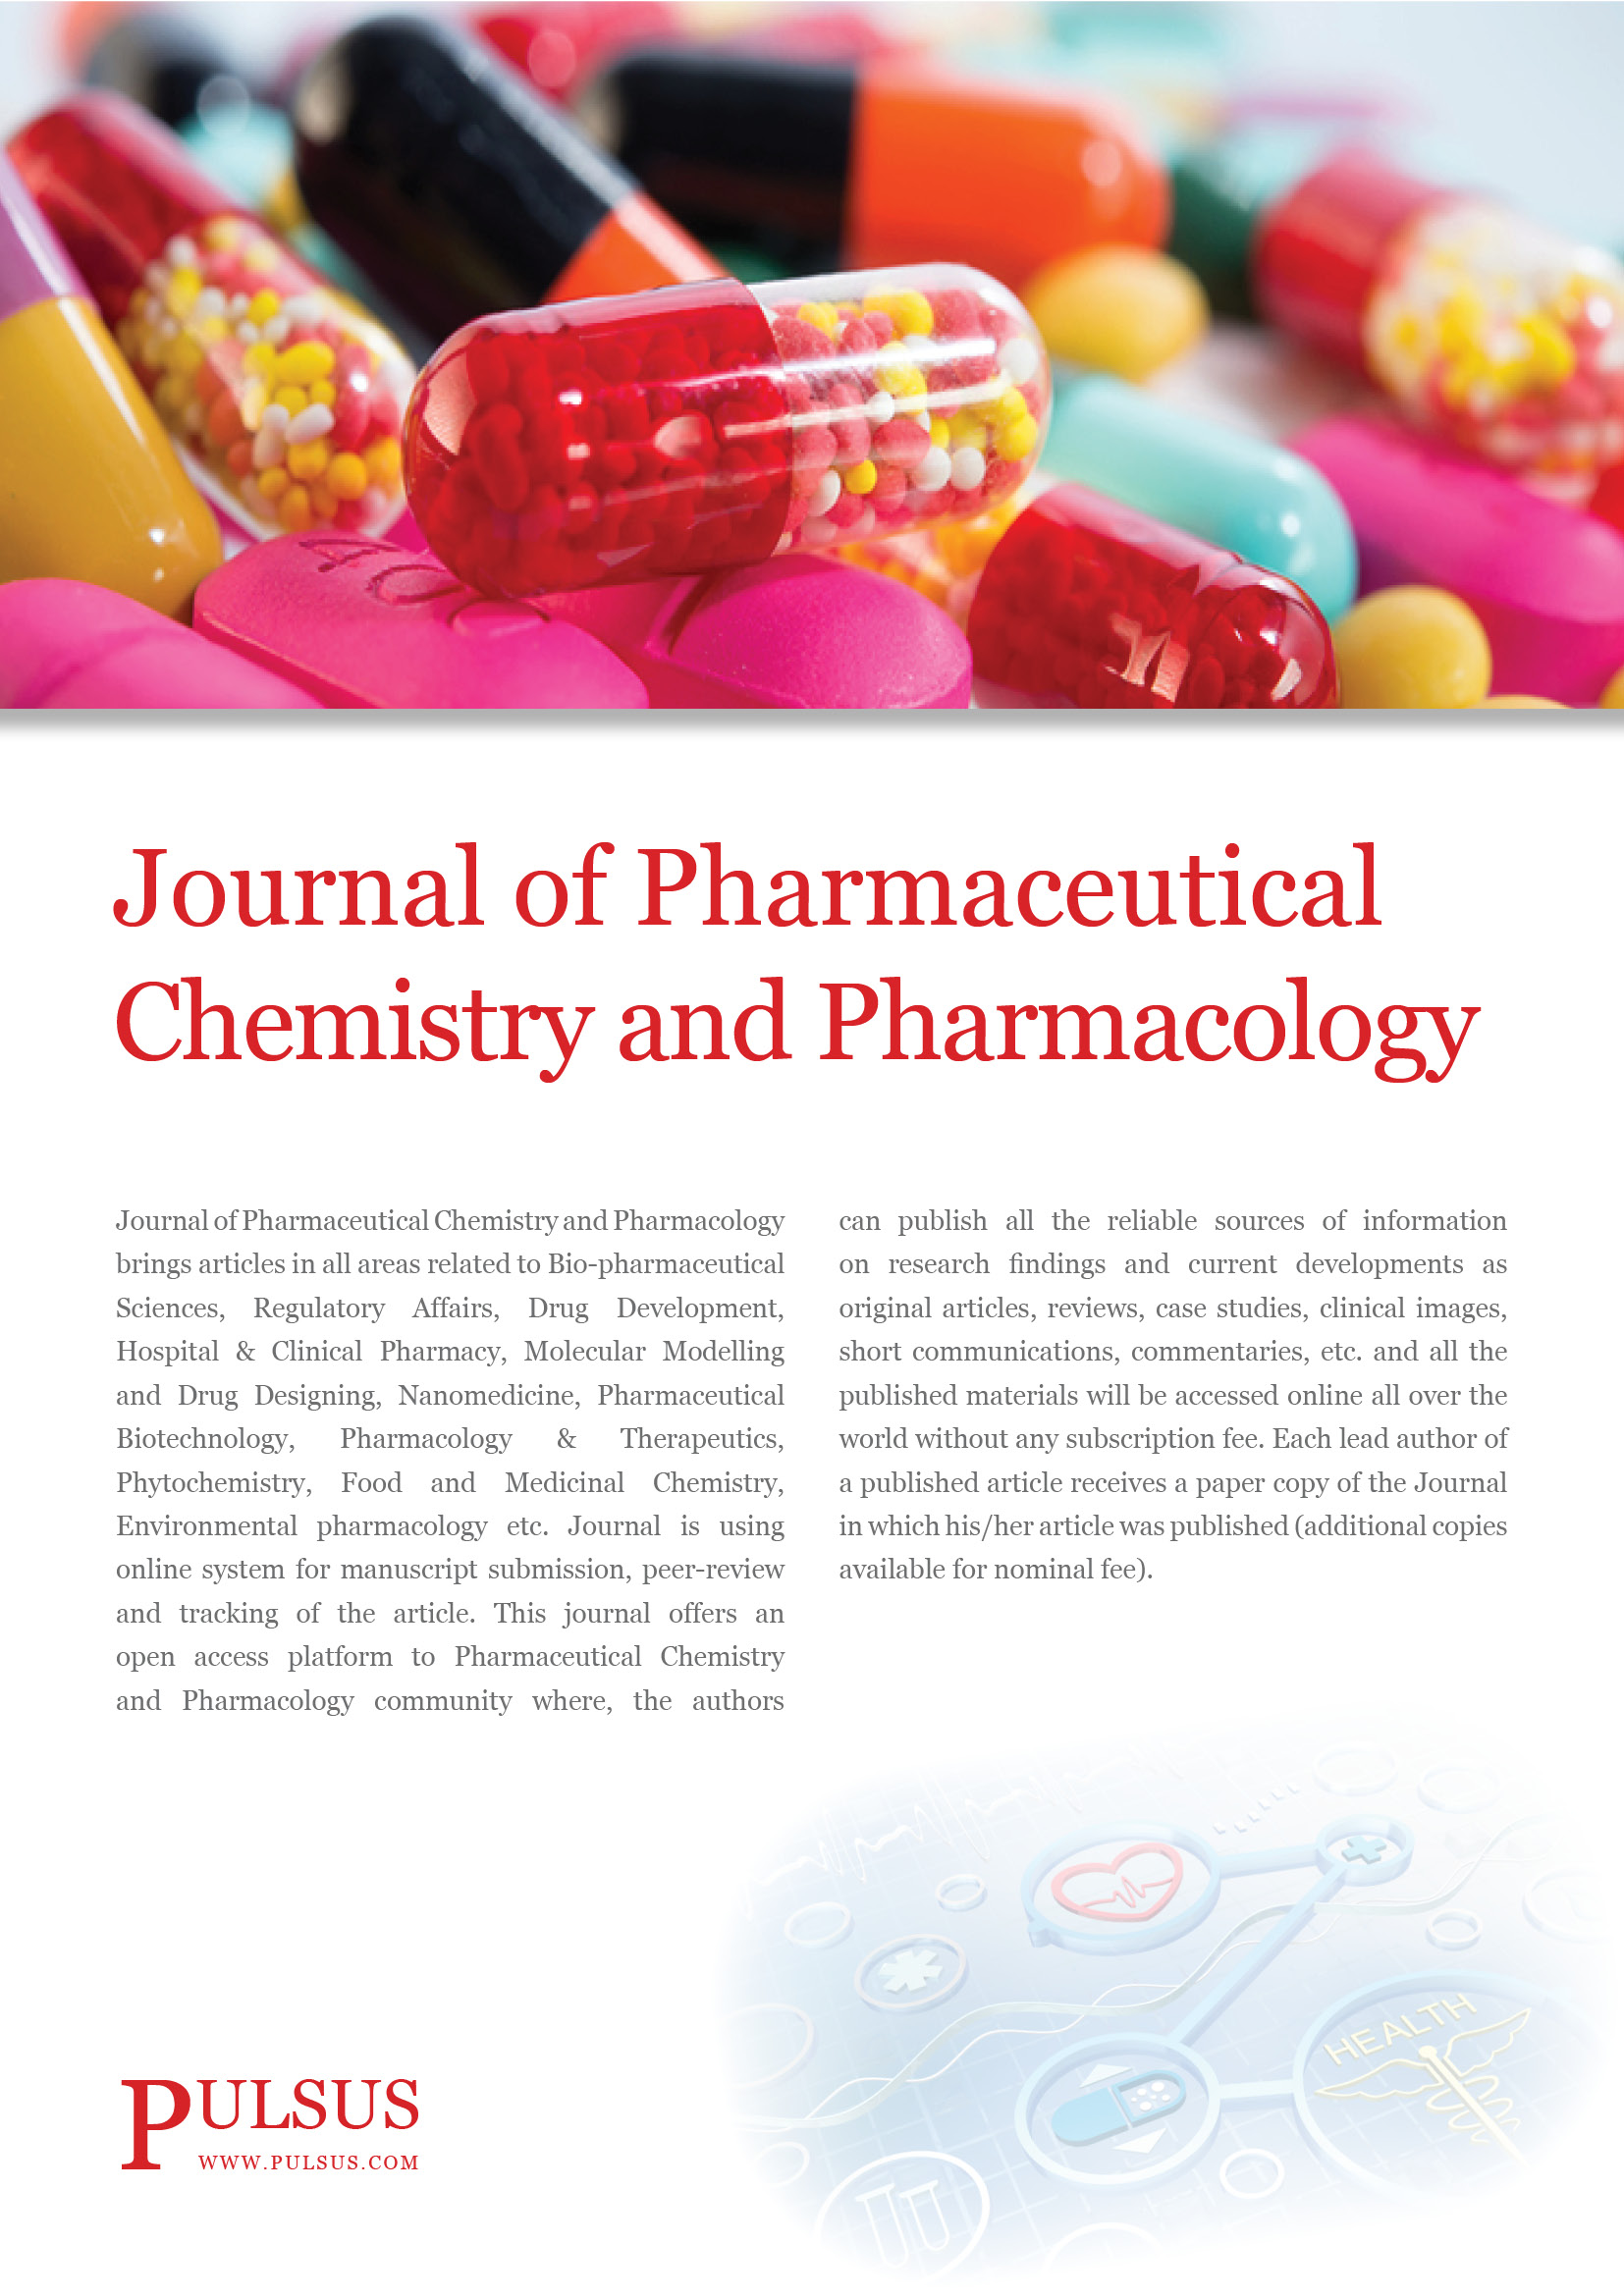 Revista de Química Farmacéutica y Farmacología